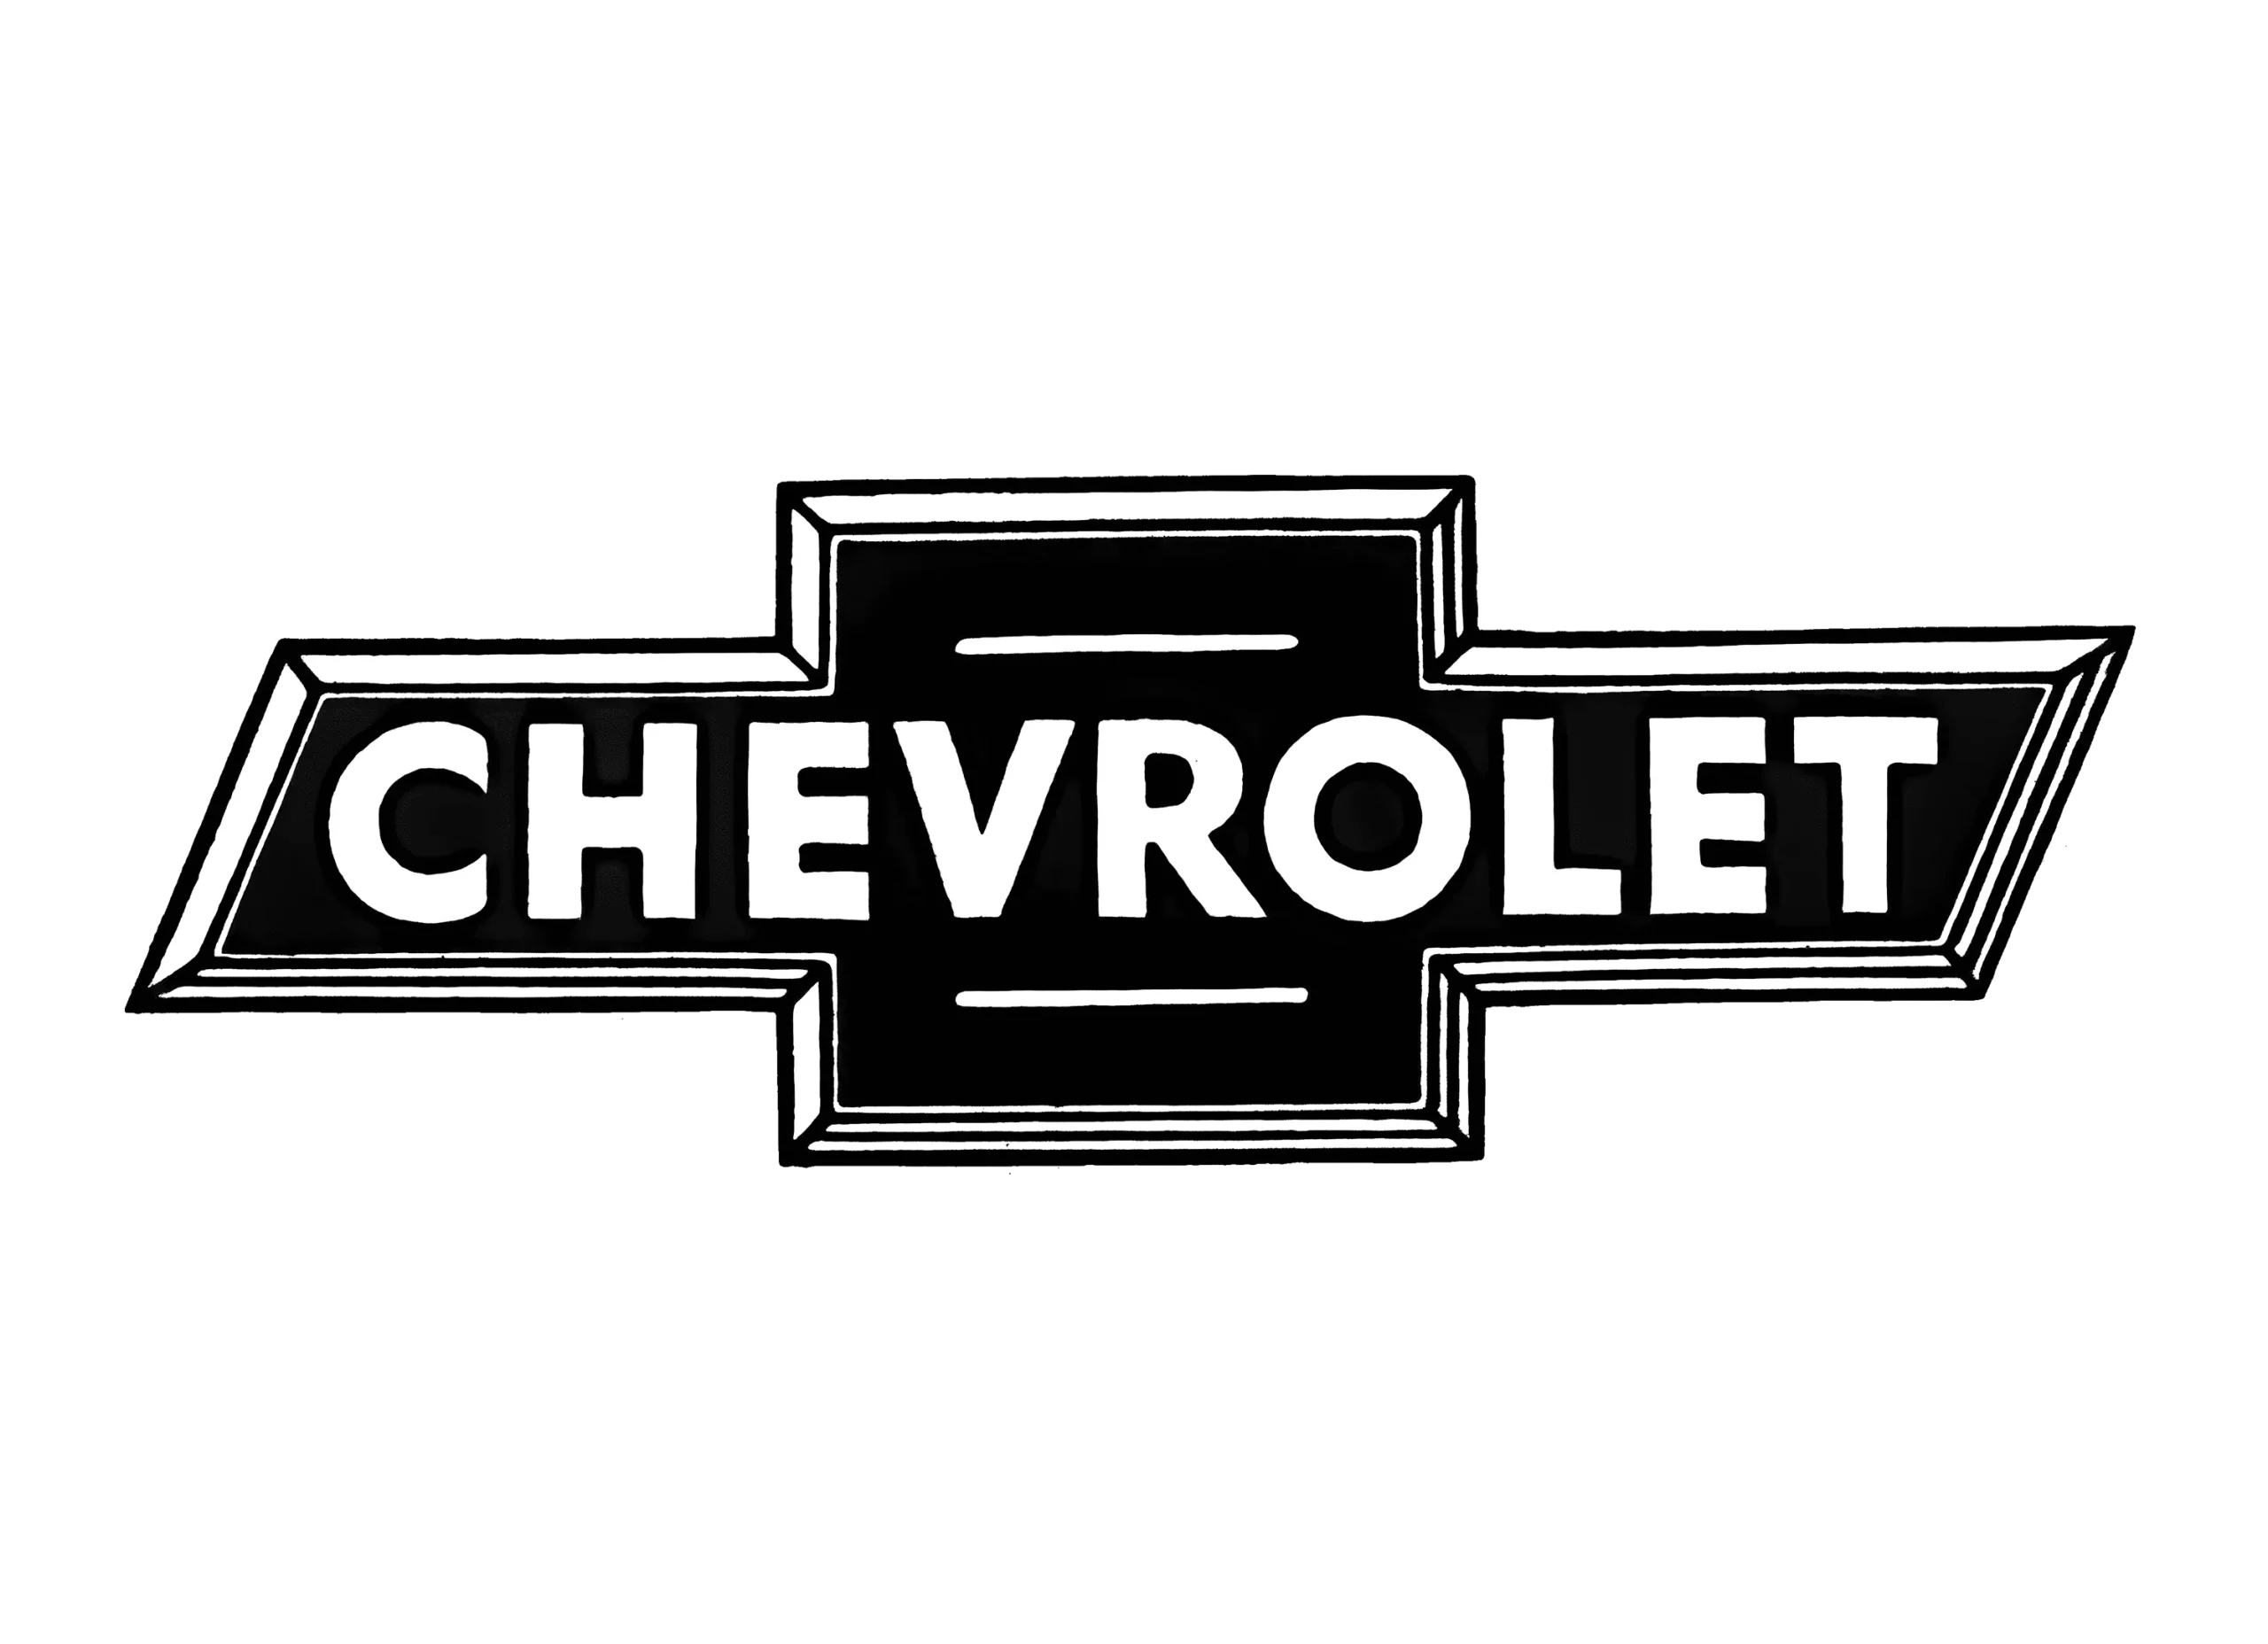 Chevrolet logo 1934-1940